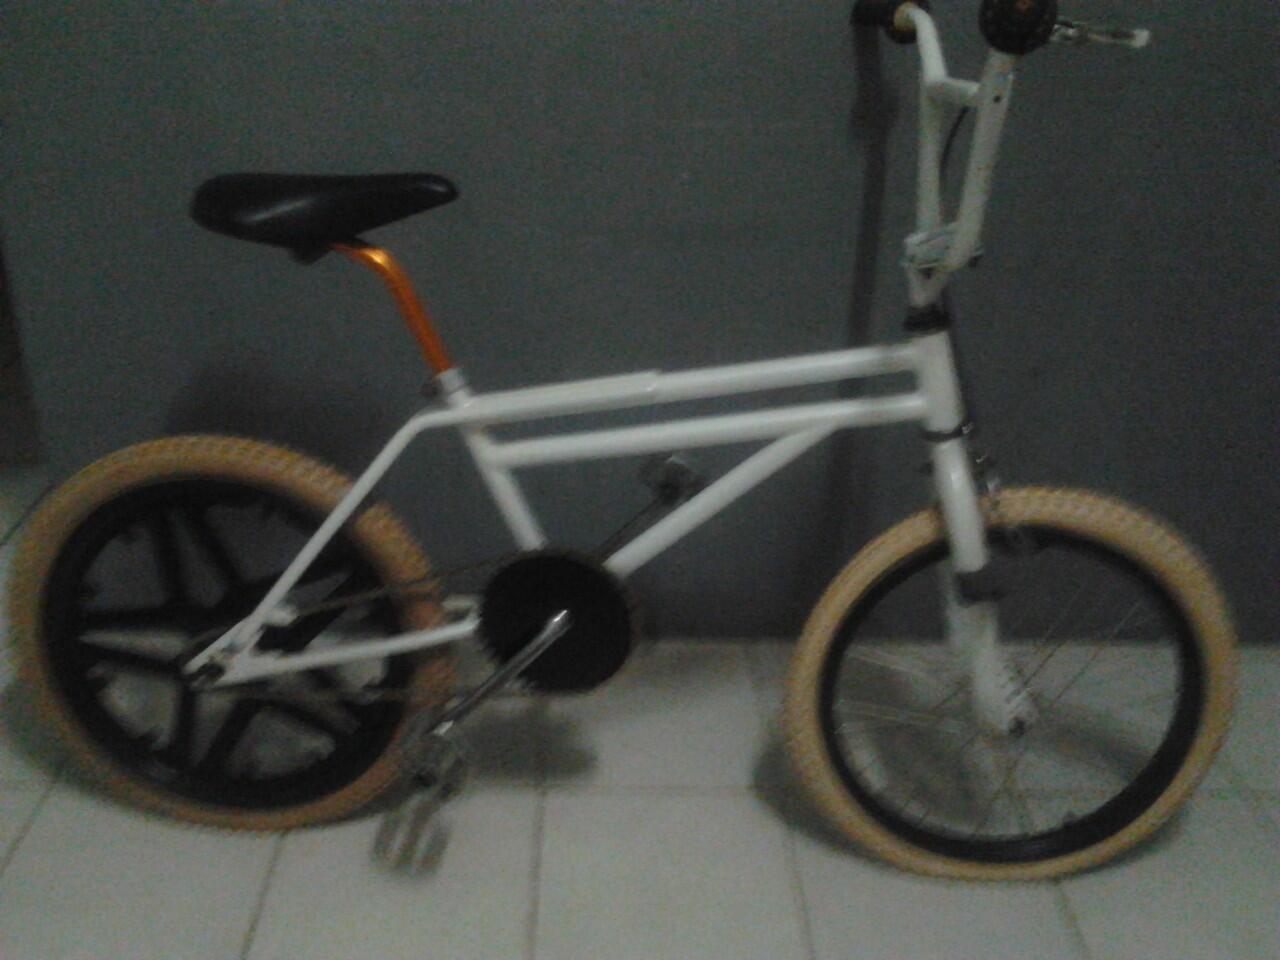  Sepeda Bmx Jadul 